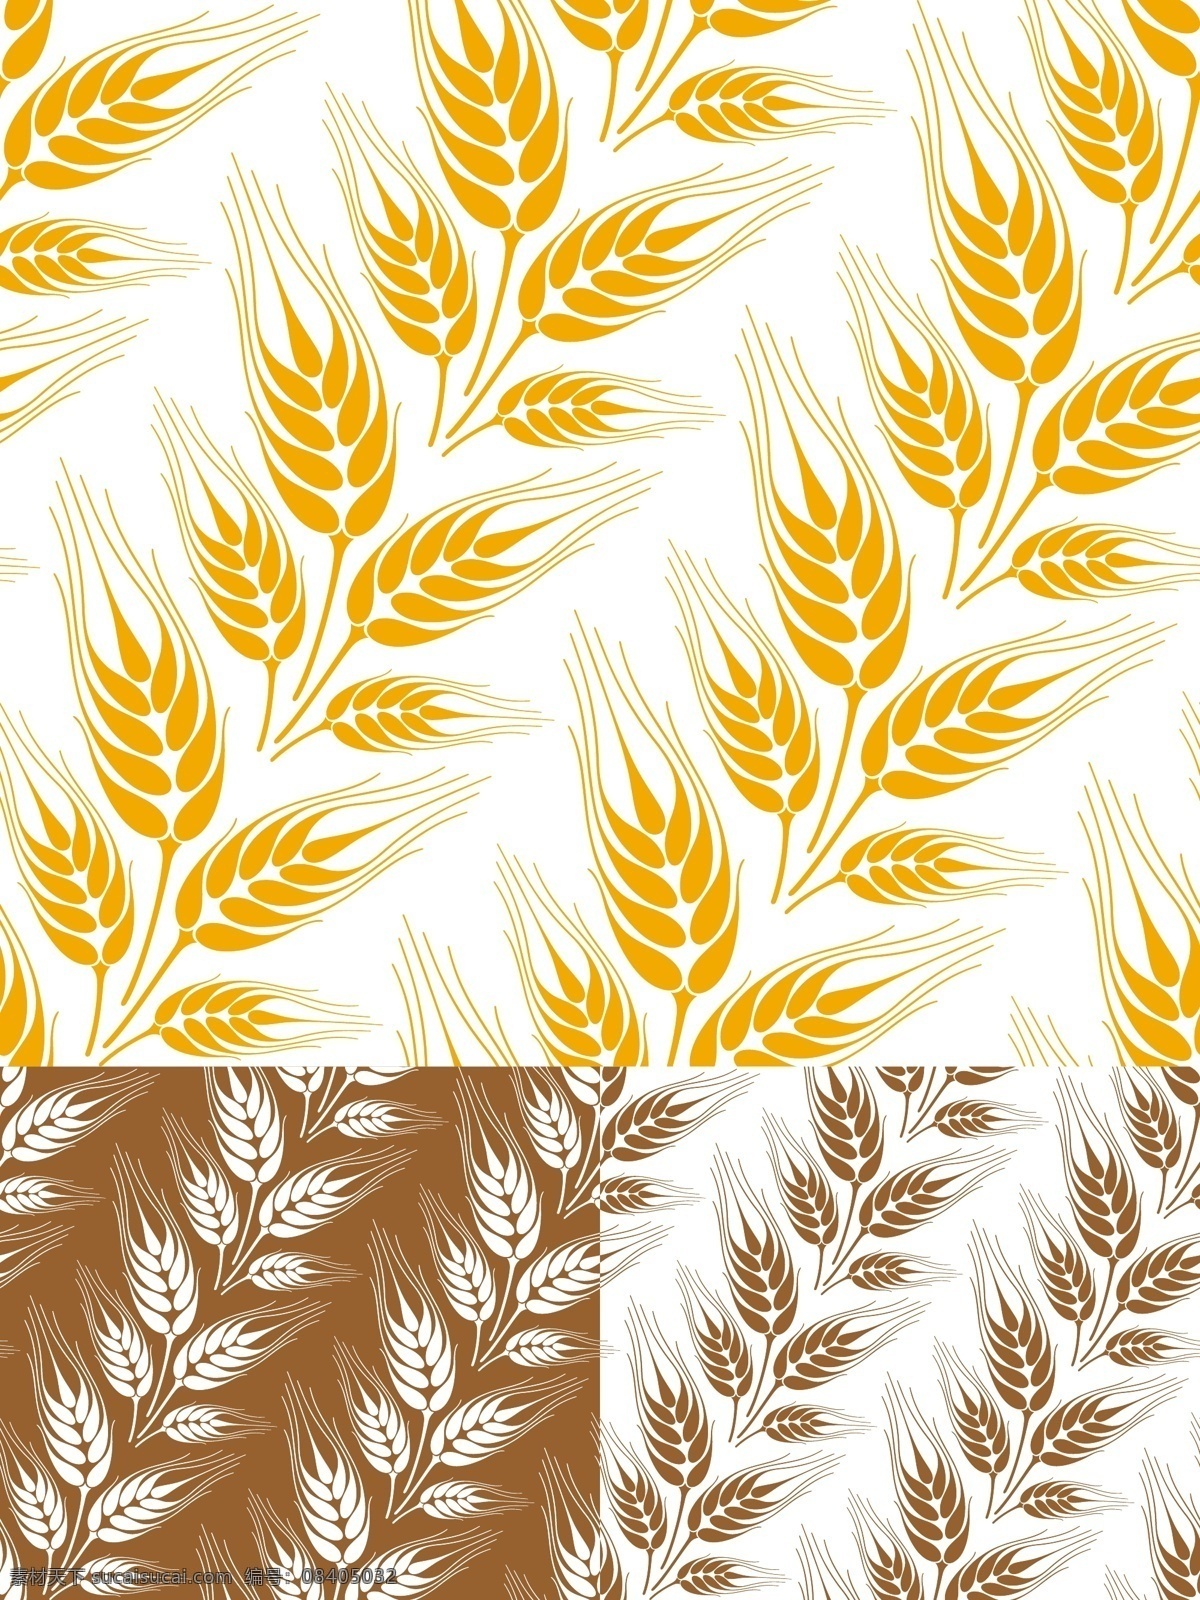 小麦 全麦 面包 金色 花纹 矢量素材 设计素材